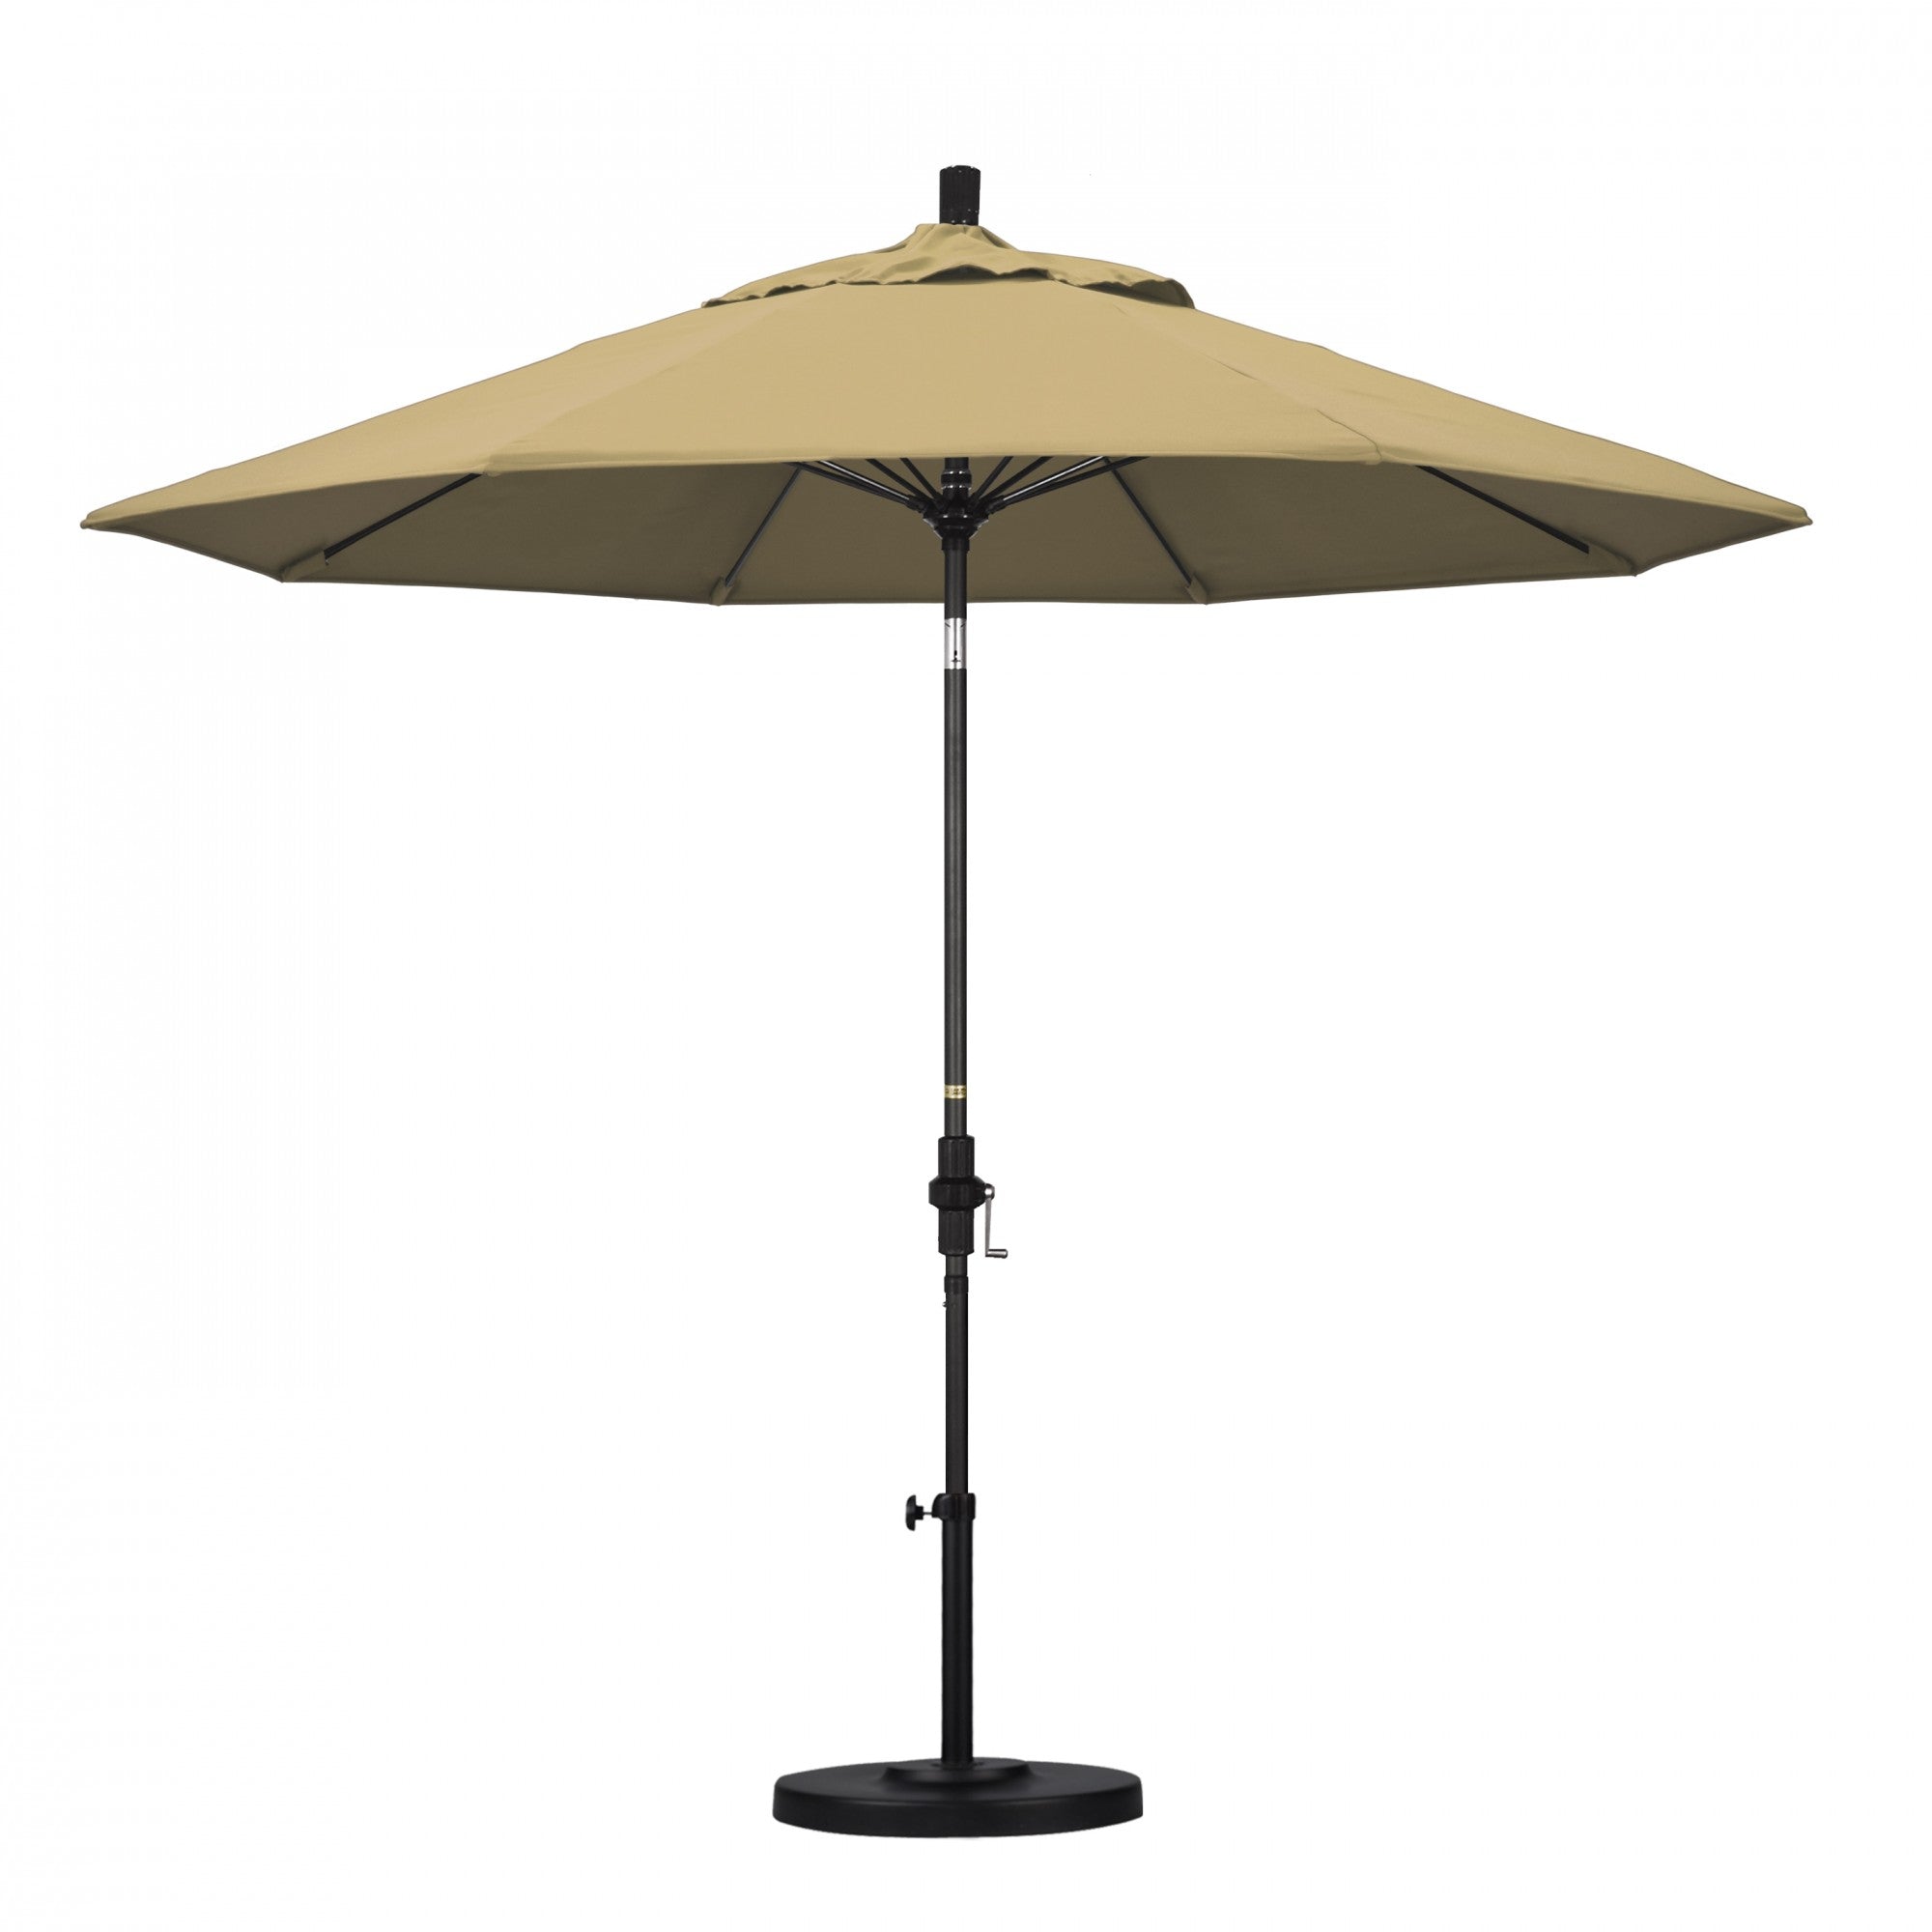 California Umbrella - 9' - Patio Umbrella Umbrella - Aluminum Pole - Champagne - Olefin - GSCUF908705-F67